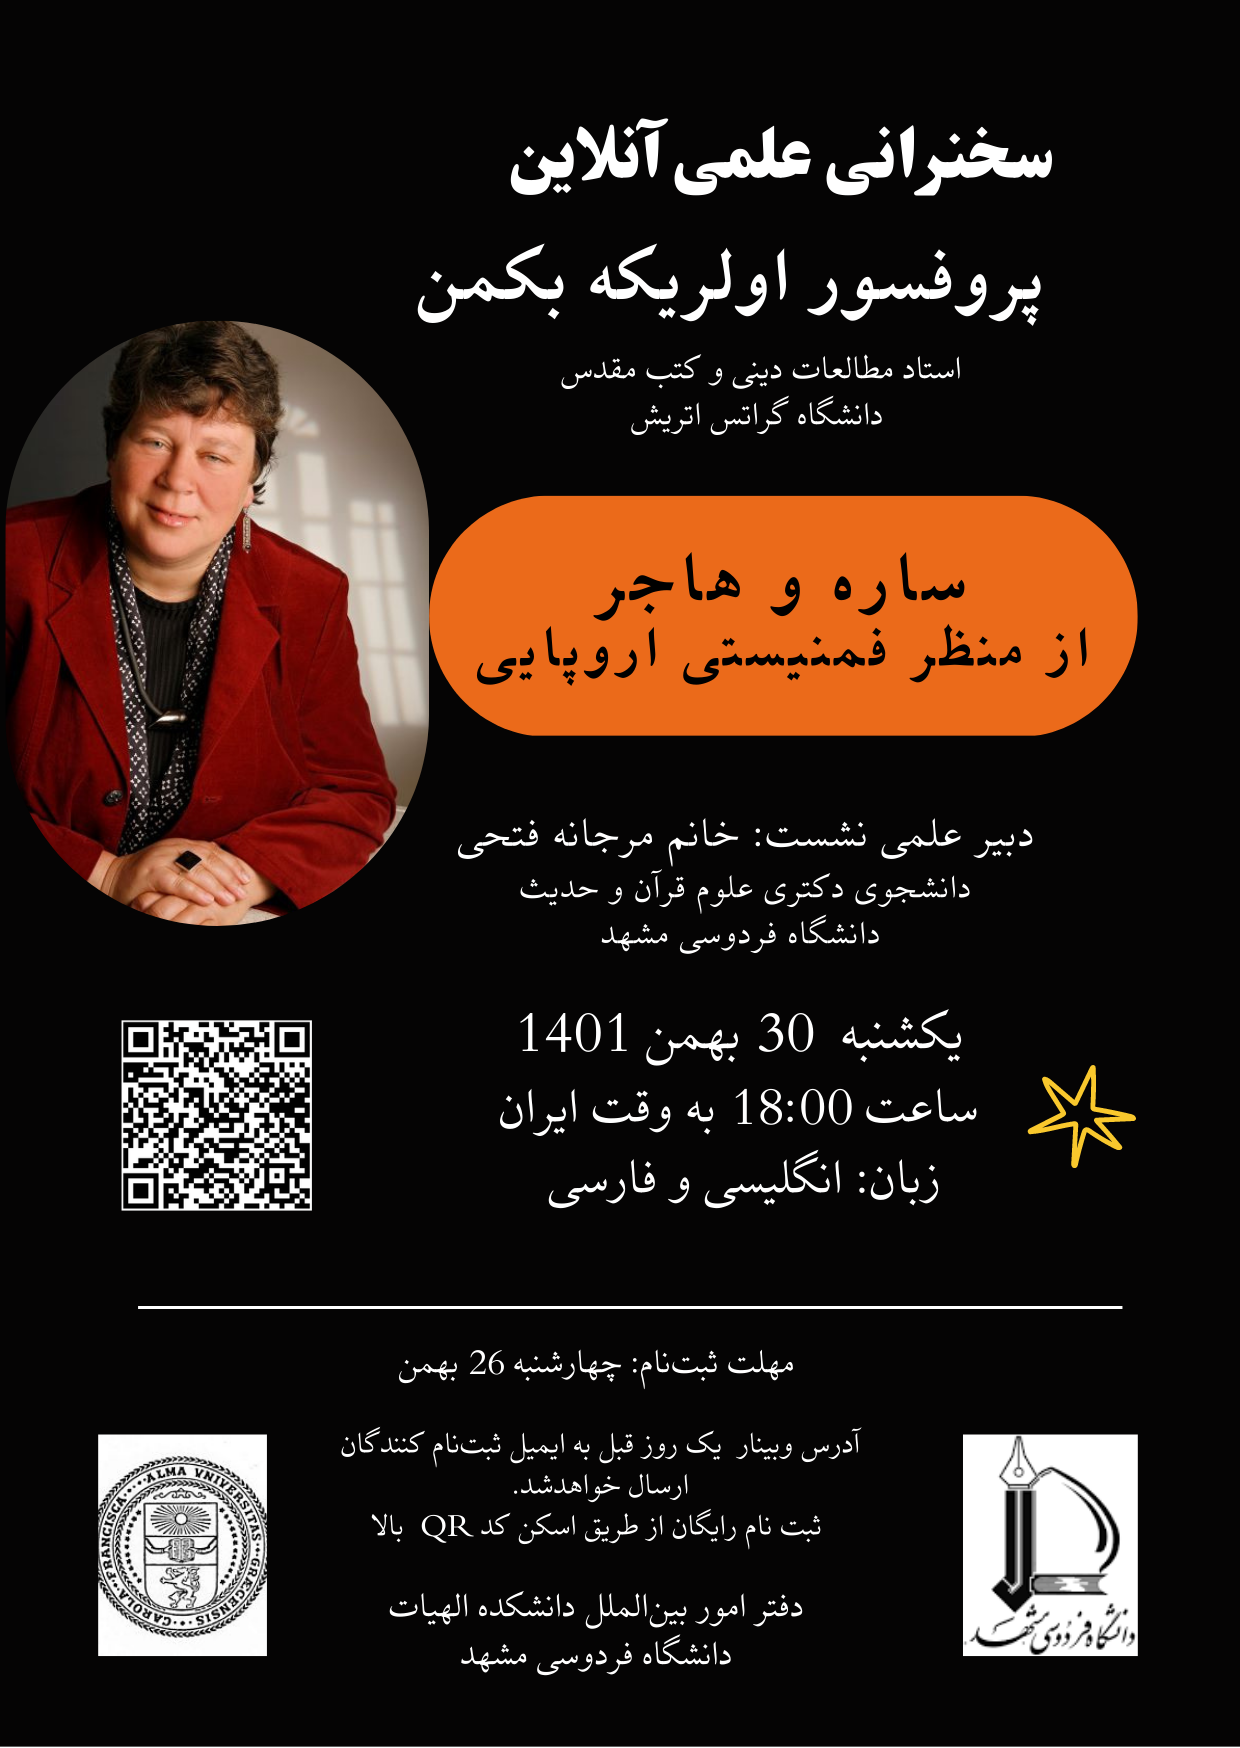 پوستر فارسی سخنرانی اتریشی با آرم